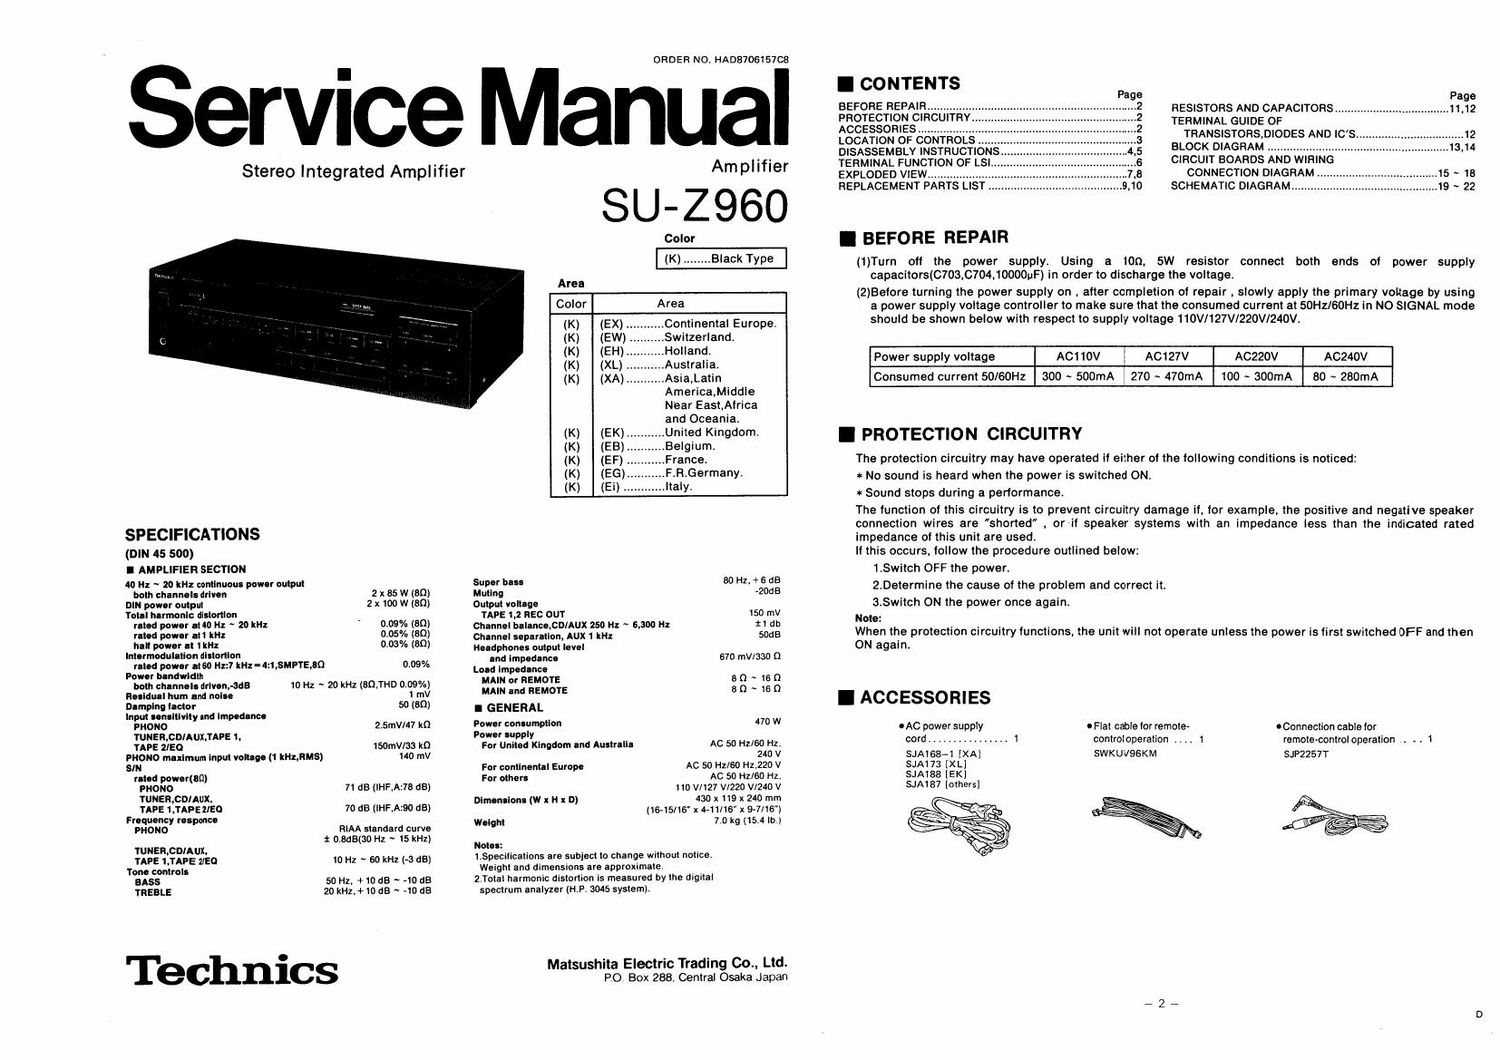 Technics SUZ 960 Service Manual